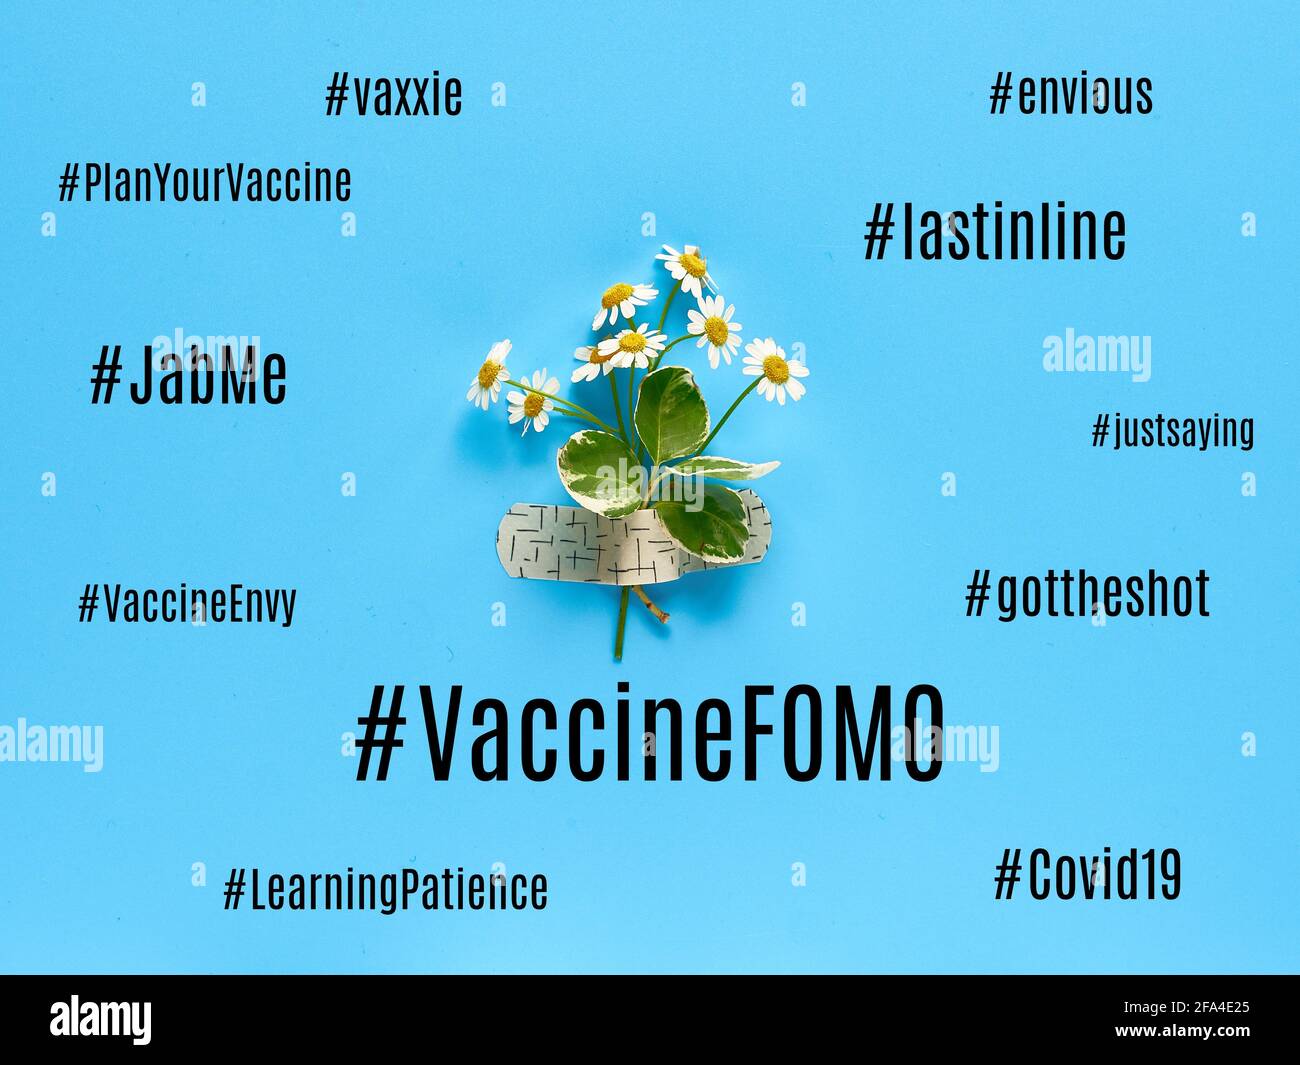 Vaccino FOMO hashtag. Paura di perdere il vaccino covid. Incertezza durante le pandemie di Covid-19. Nuvola di concetti e sentimenti correlati. Carta blu Foto Stock